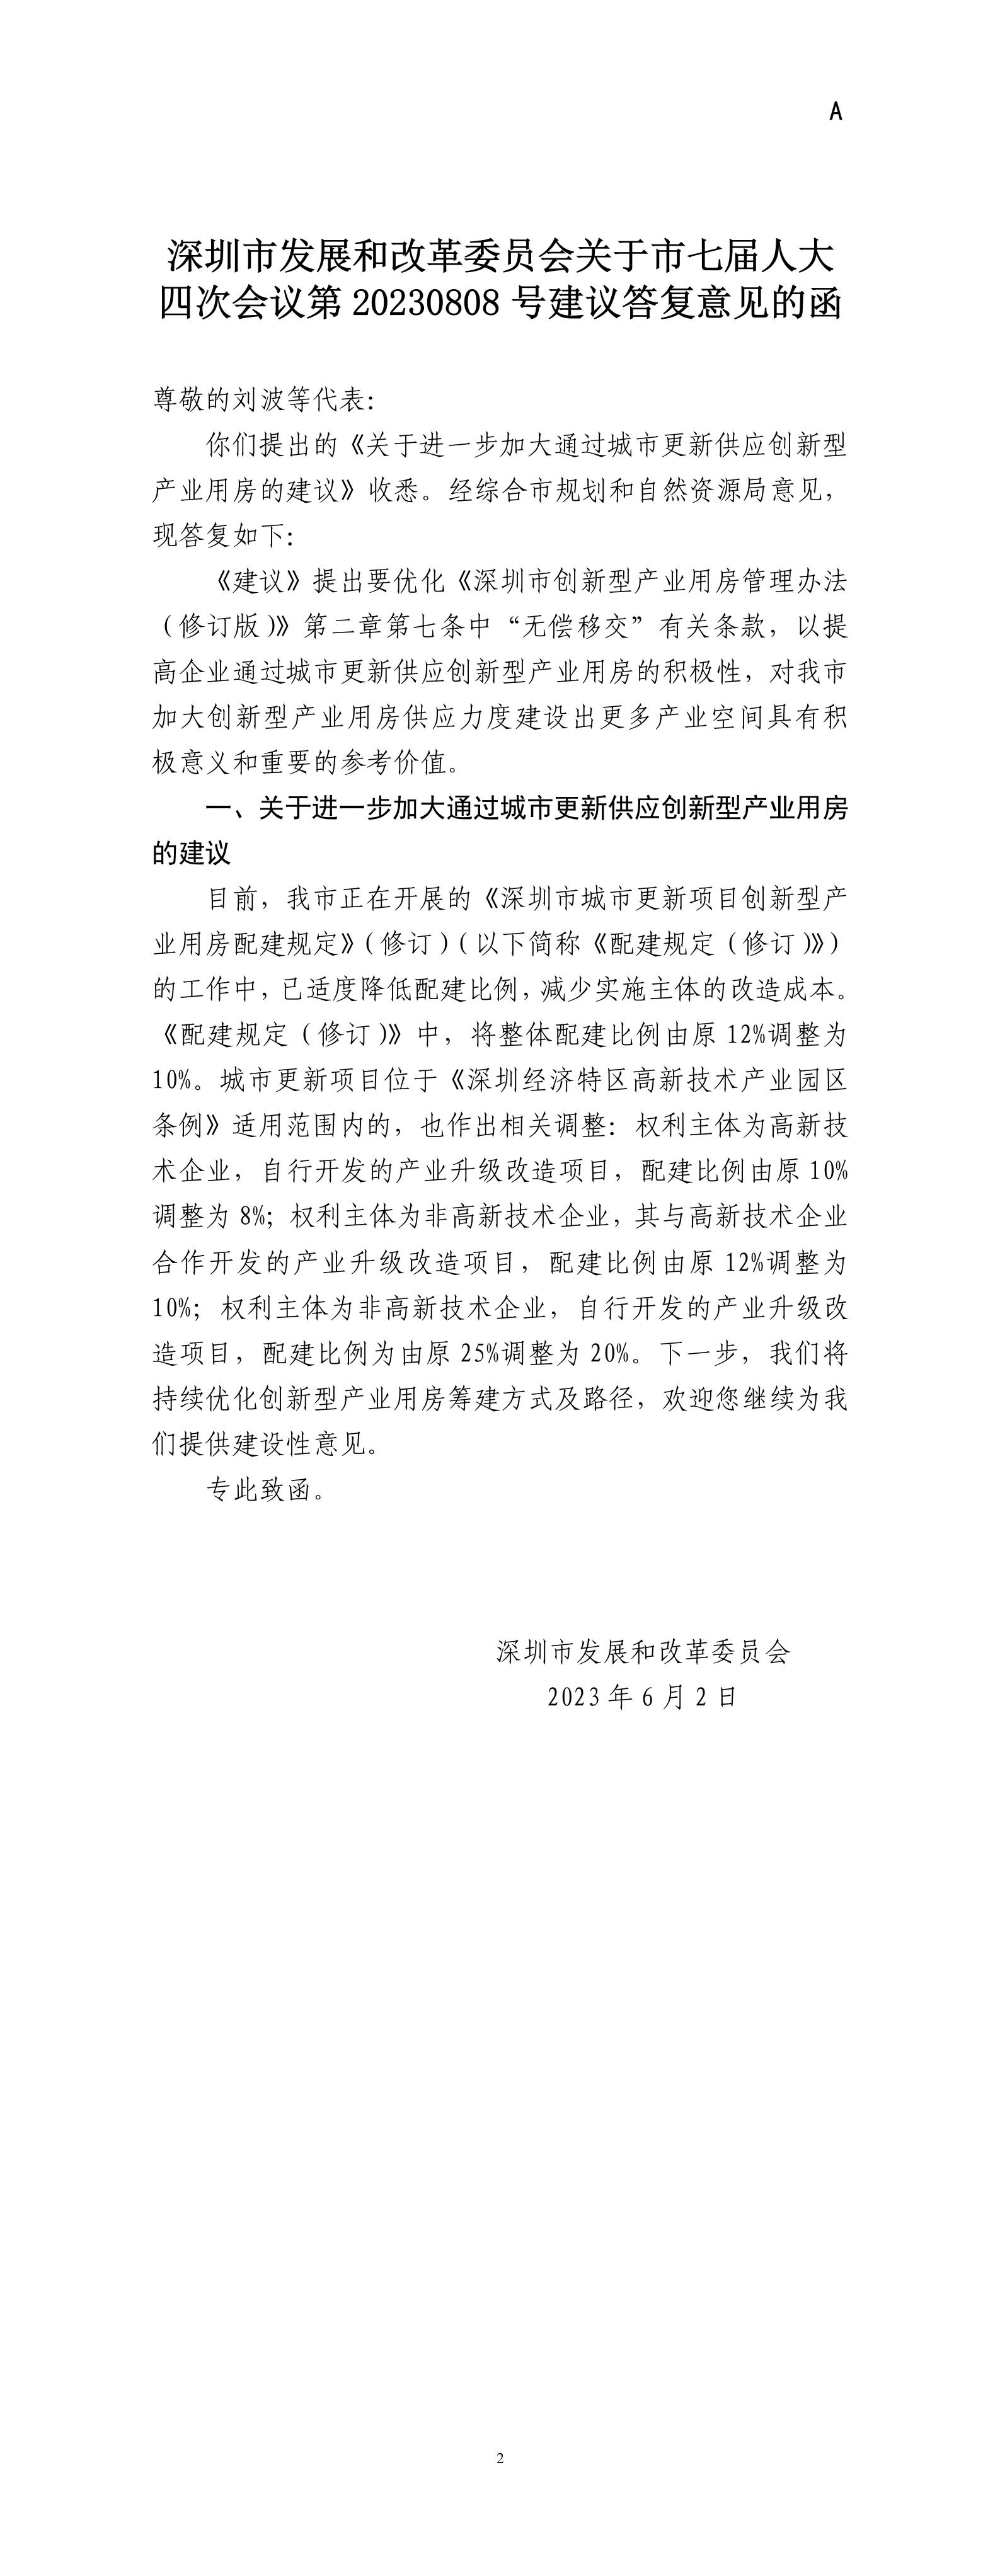 深圳市发展和改革委员会关于市七届人大四次会议第20230808号建议答复意见的函.jpg